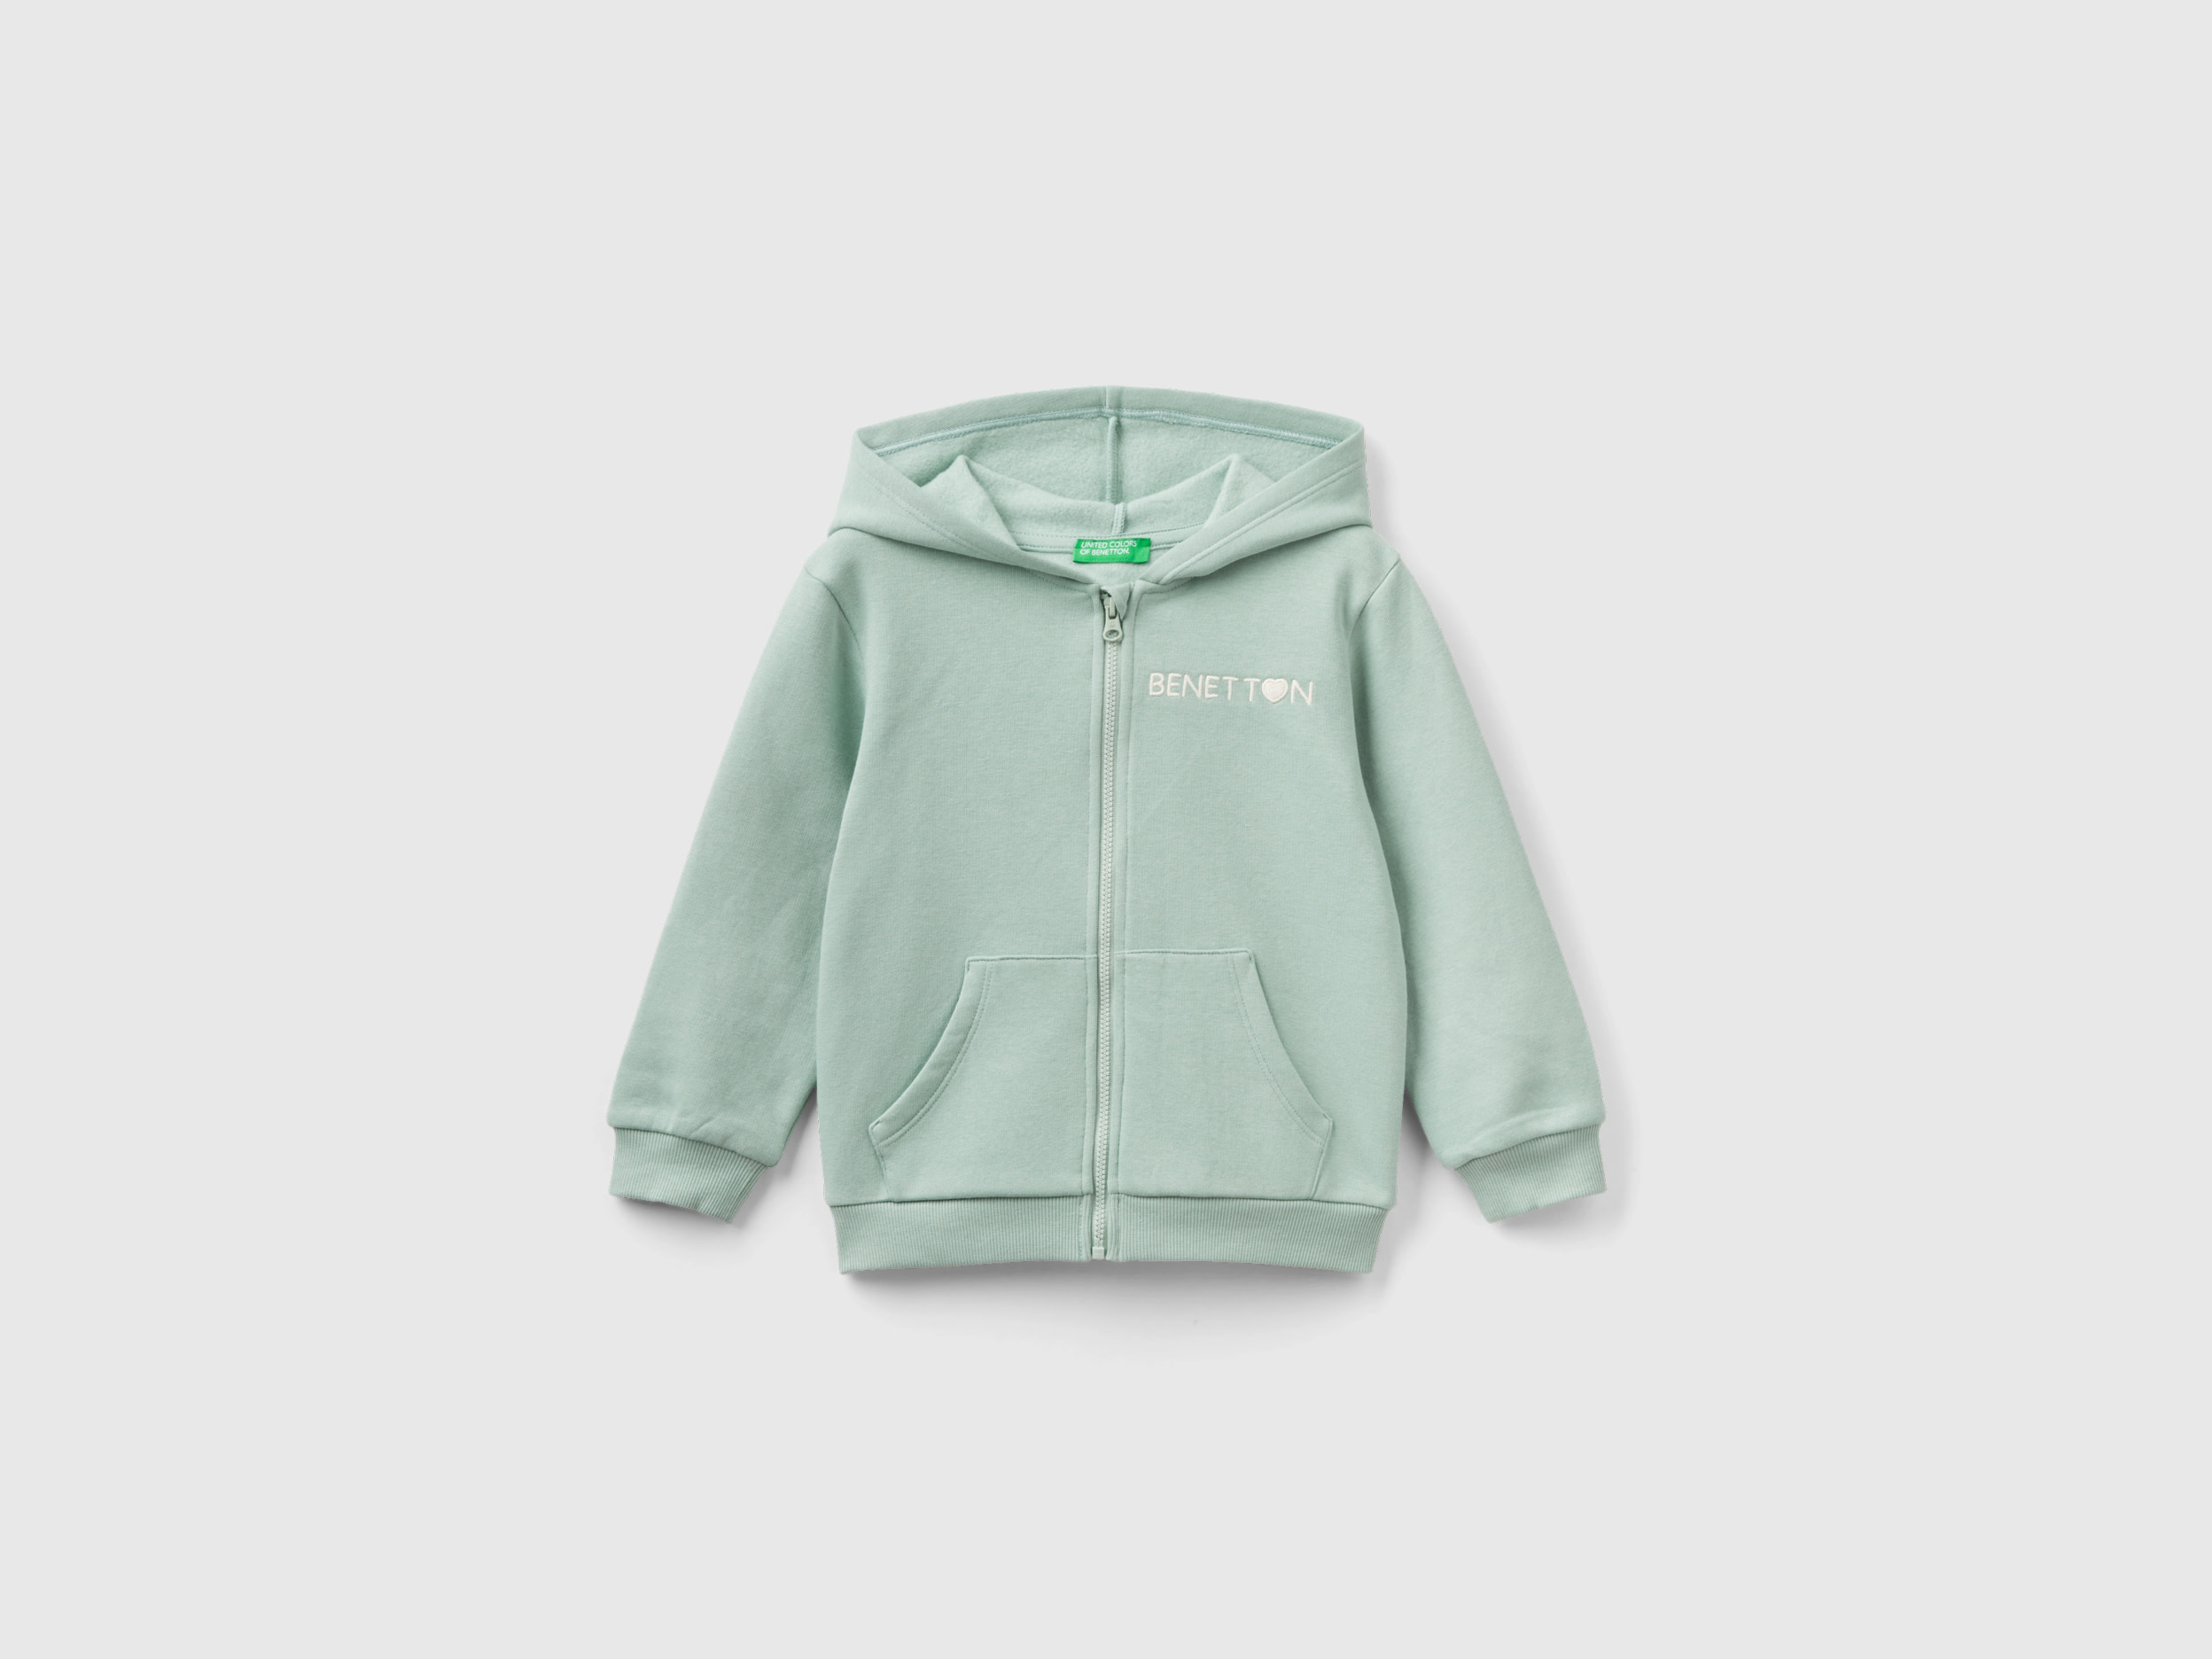 Benetton, Zip-up Sweatshirt In Cotton Blend, size 4-5, Aqua, Kids